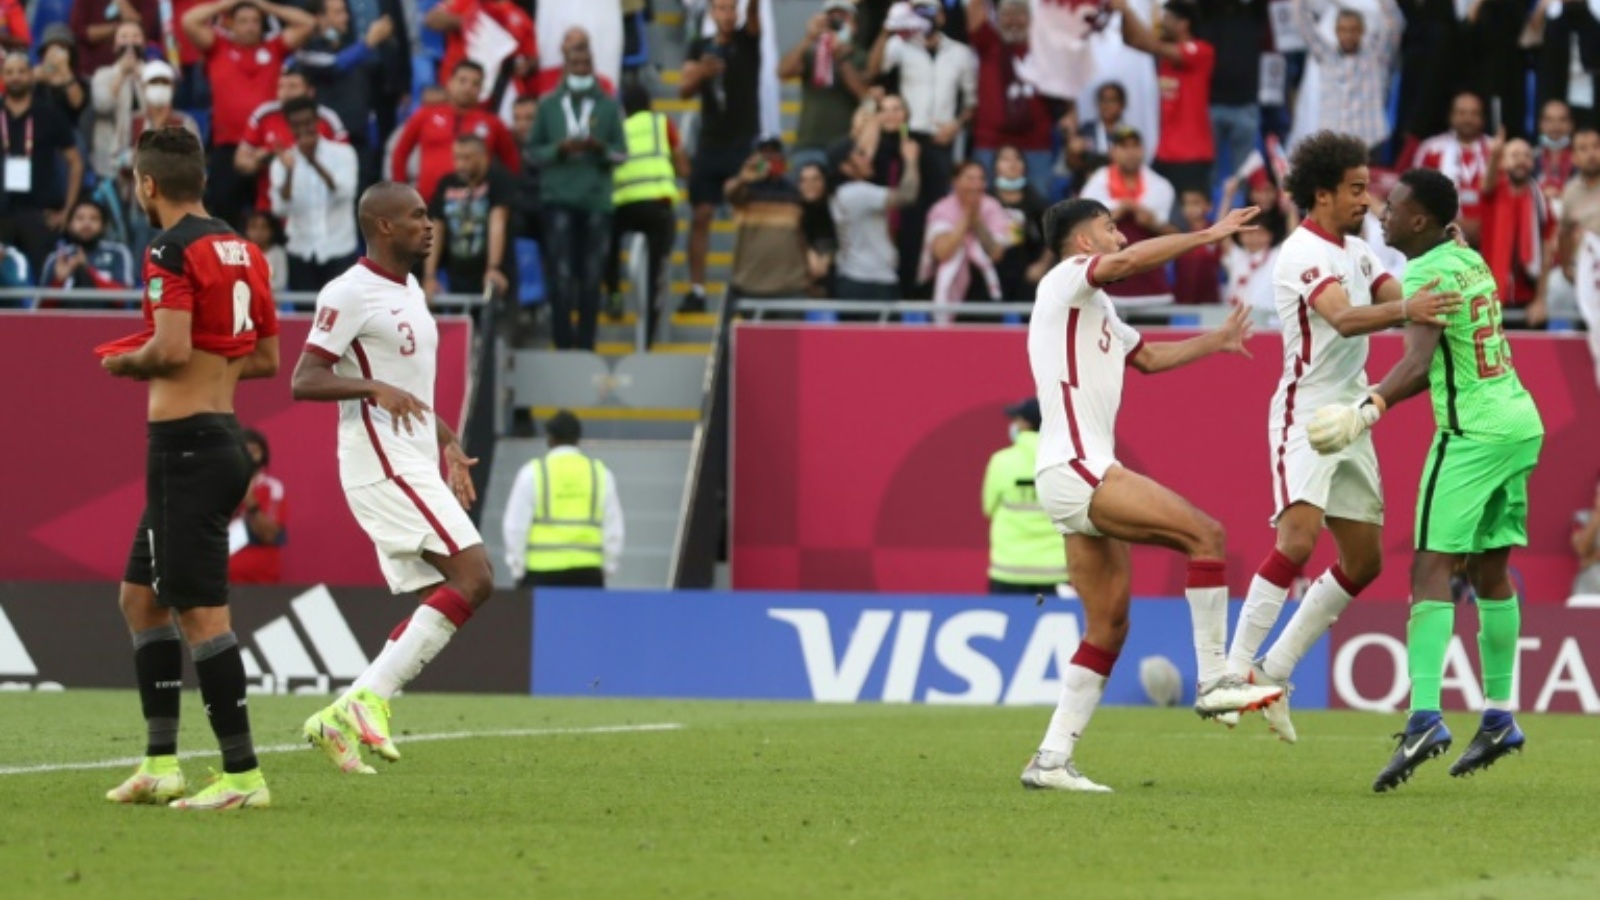 لاعبو قطر يحتفلون بالفوز على مصر بركلات الترجيح 5-4 بعد تعادلهما سلباً في الوقتين الأصلي والإضافي في مباراة تحديد المركزين الثالث والرابع في كأس العرب على استاد 974 في الدوحة في 18 كانون الأوّل/ديسمبر 2021